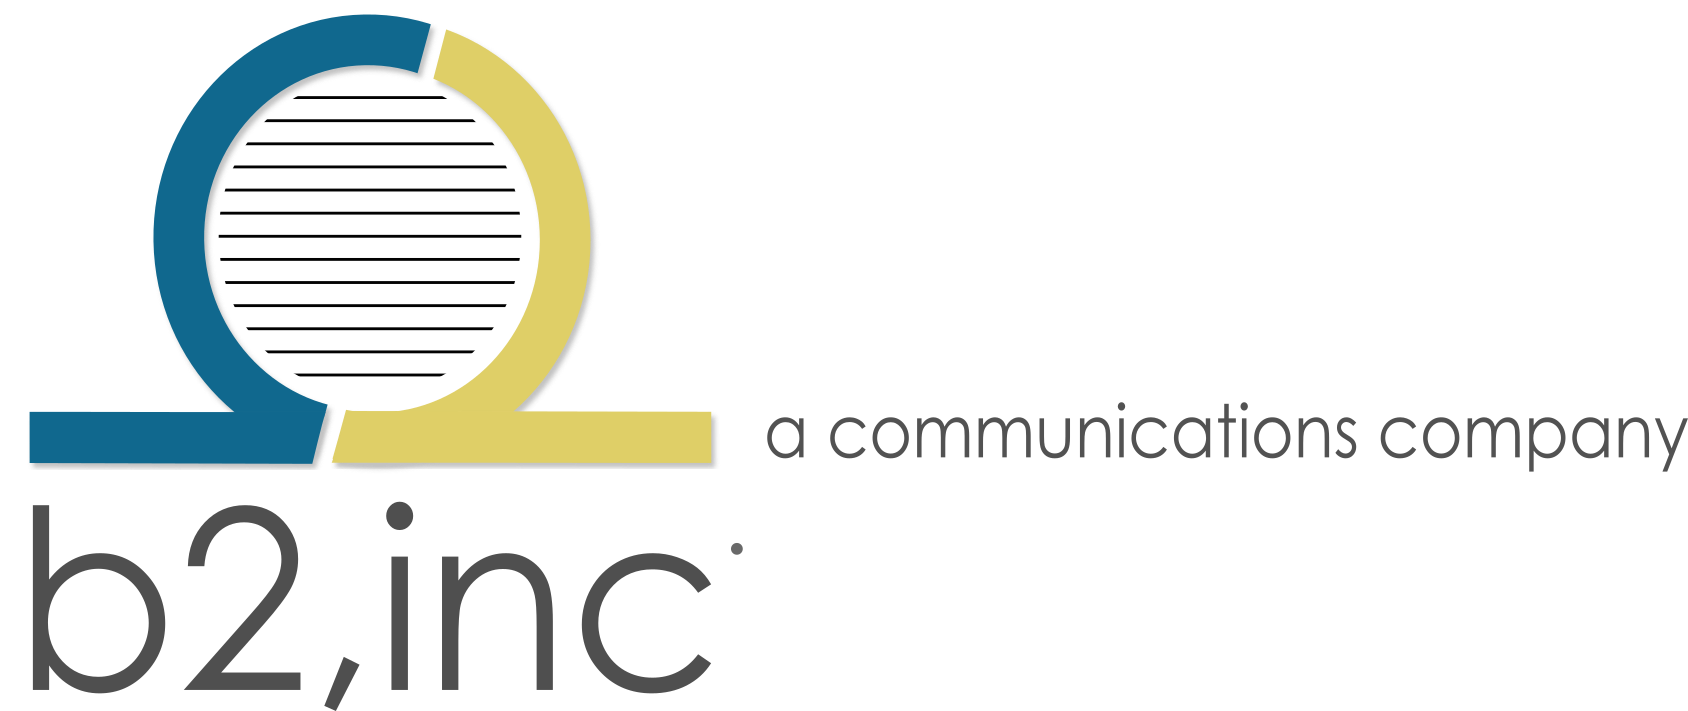 b2,inc. | a communications company